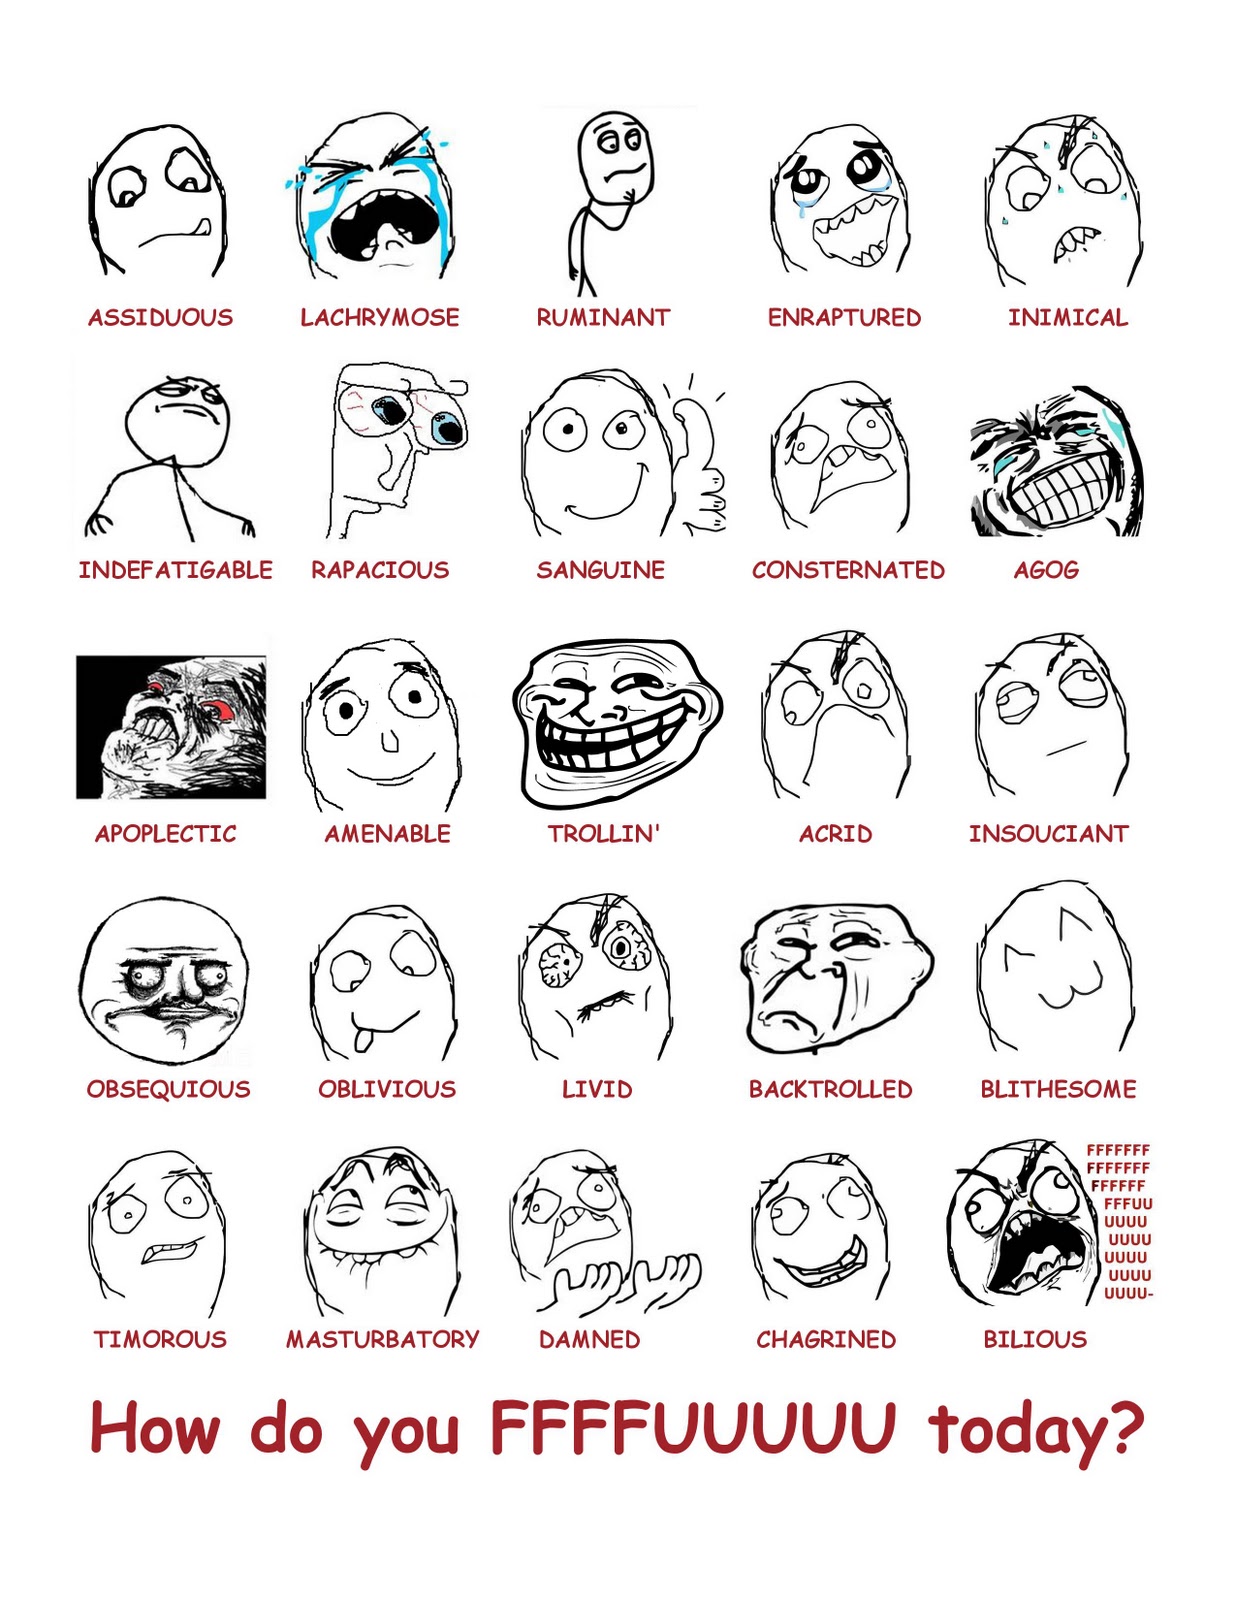 Rage Comics Faces Explained